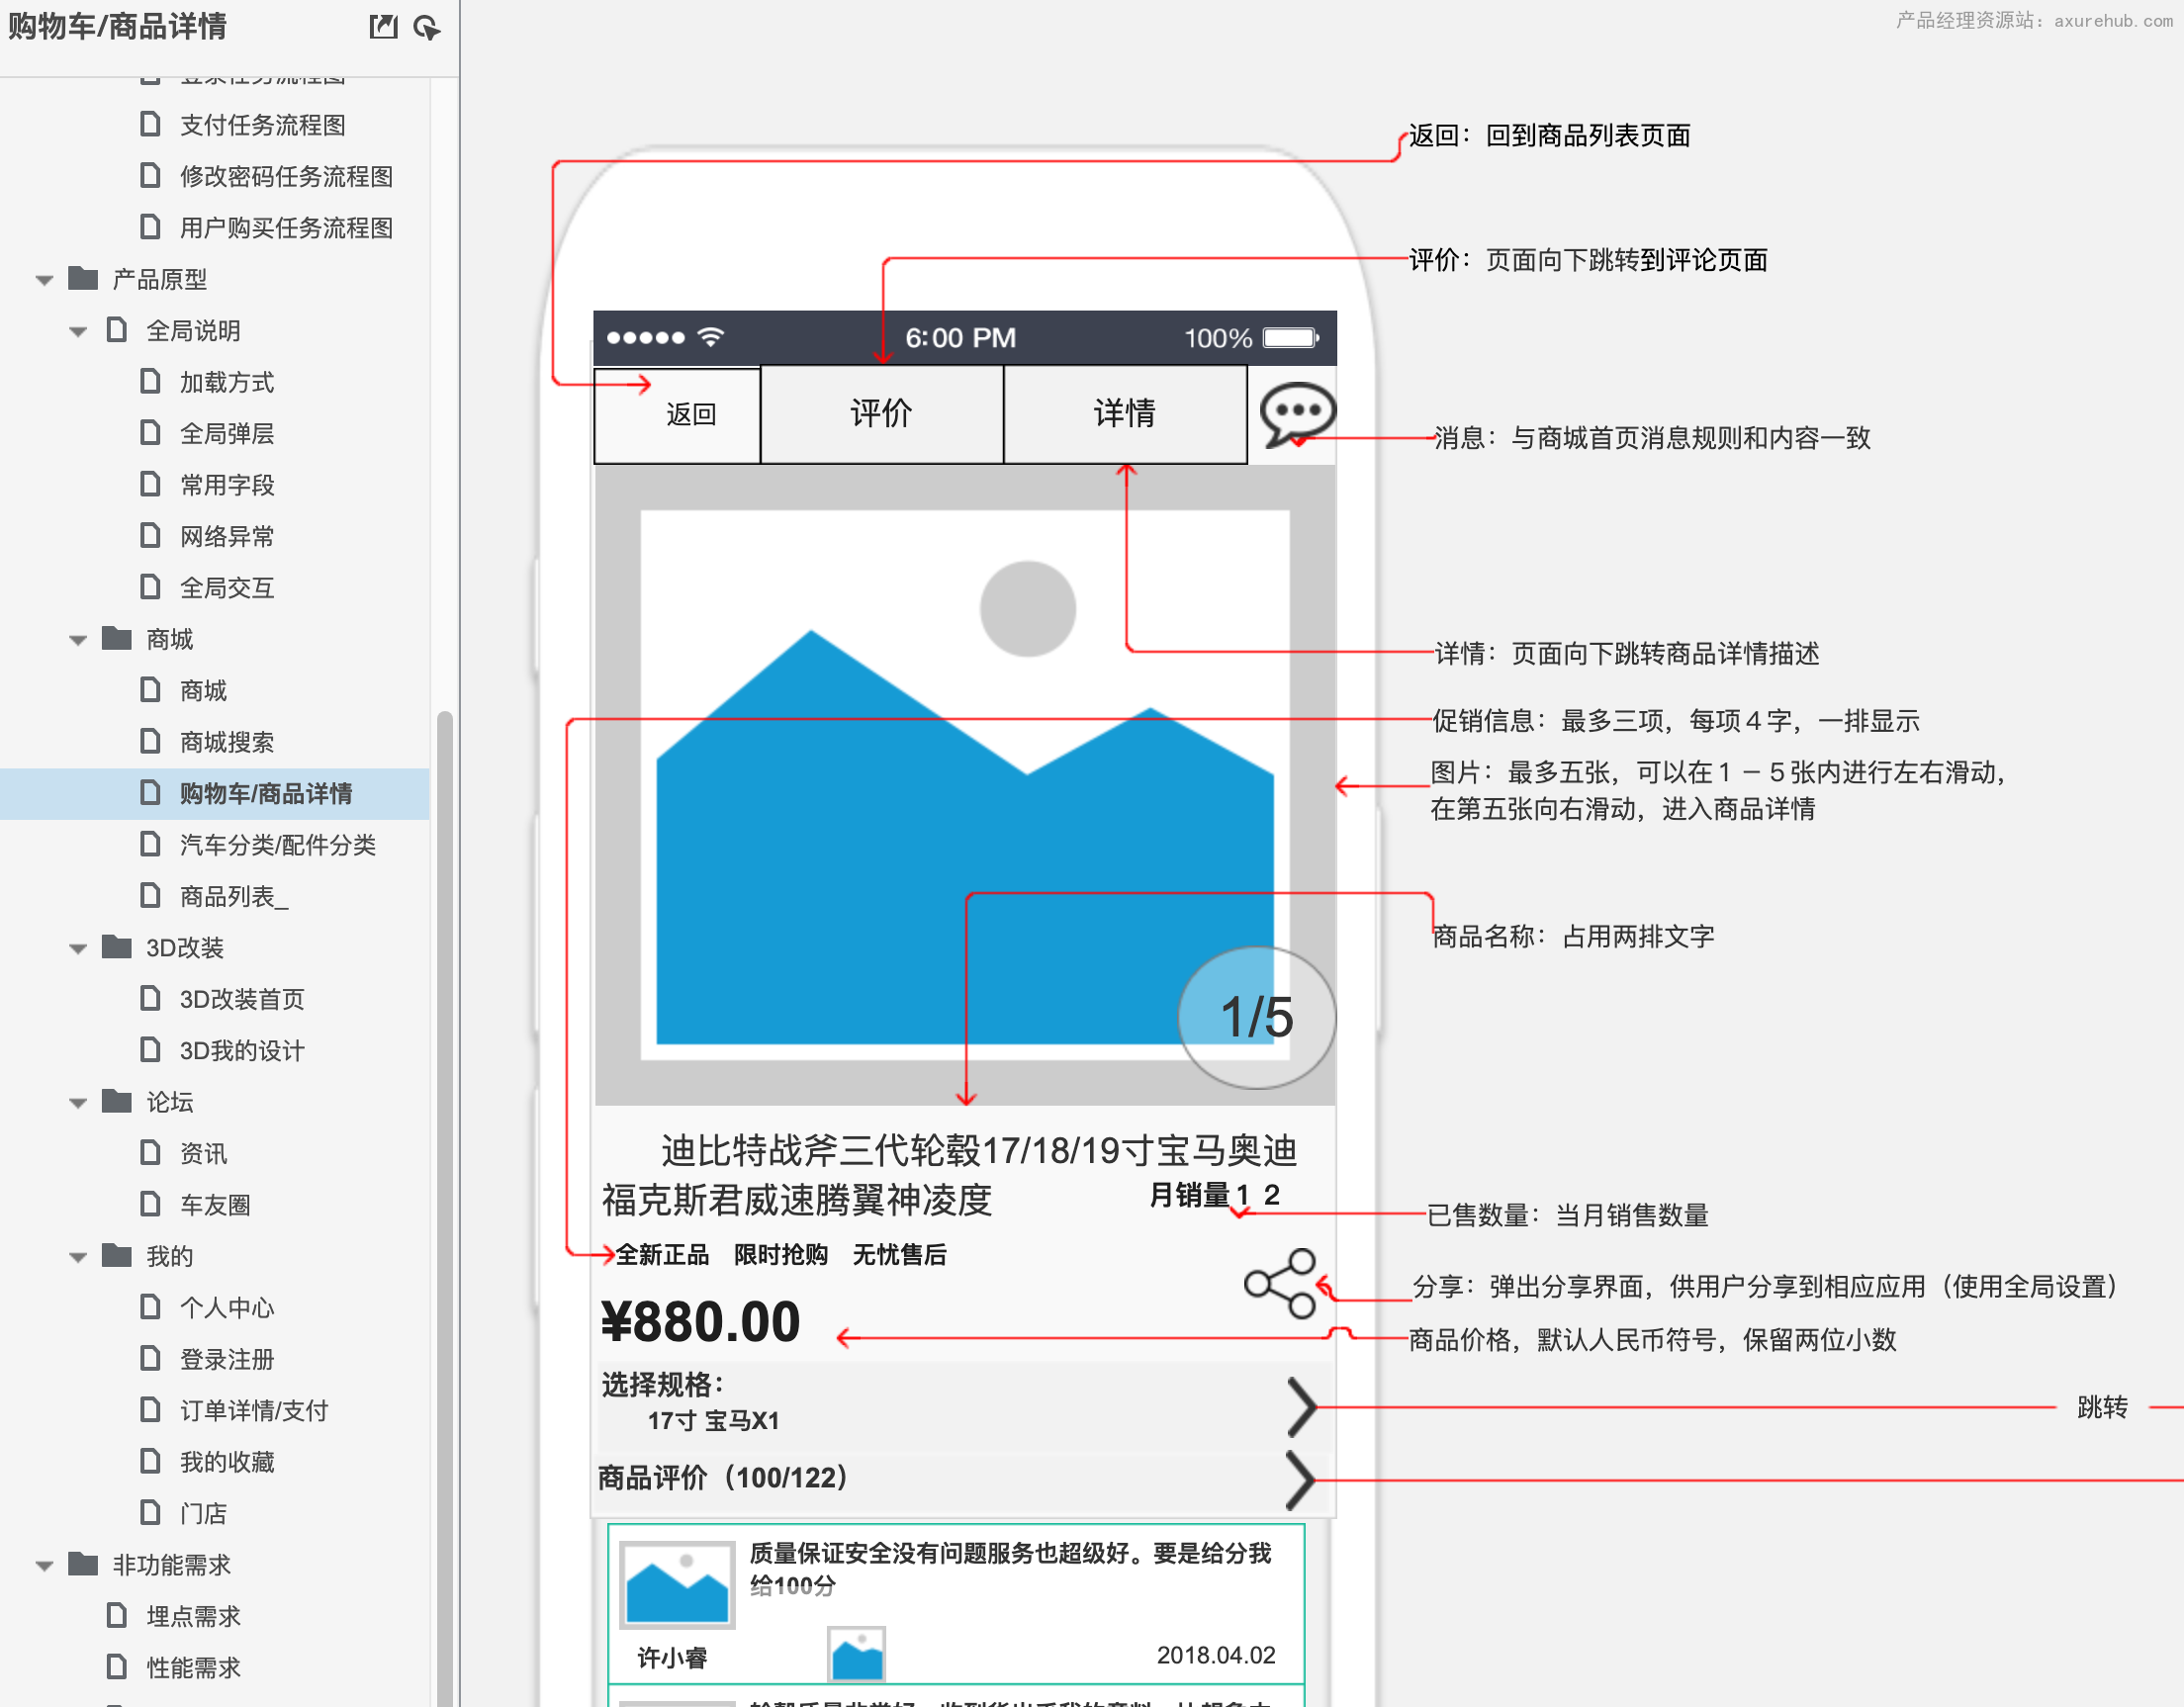 【汽车DIY定制改装App】PRD需求文档axure模板插图1